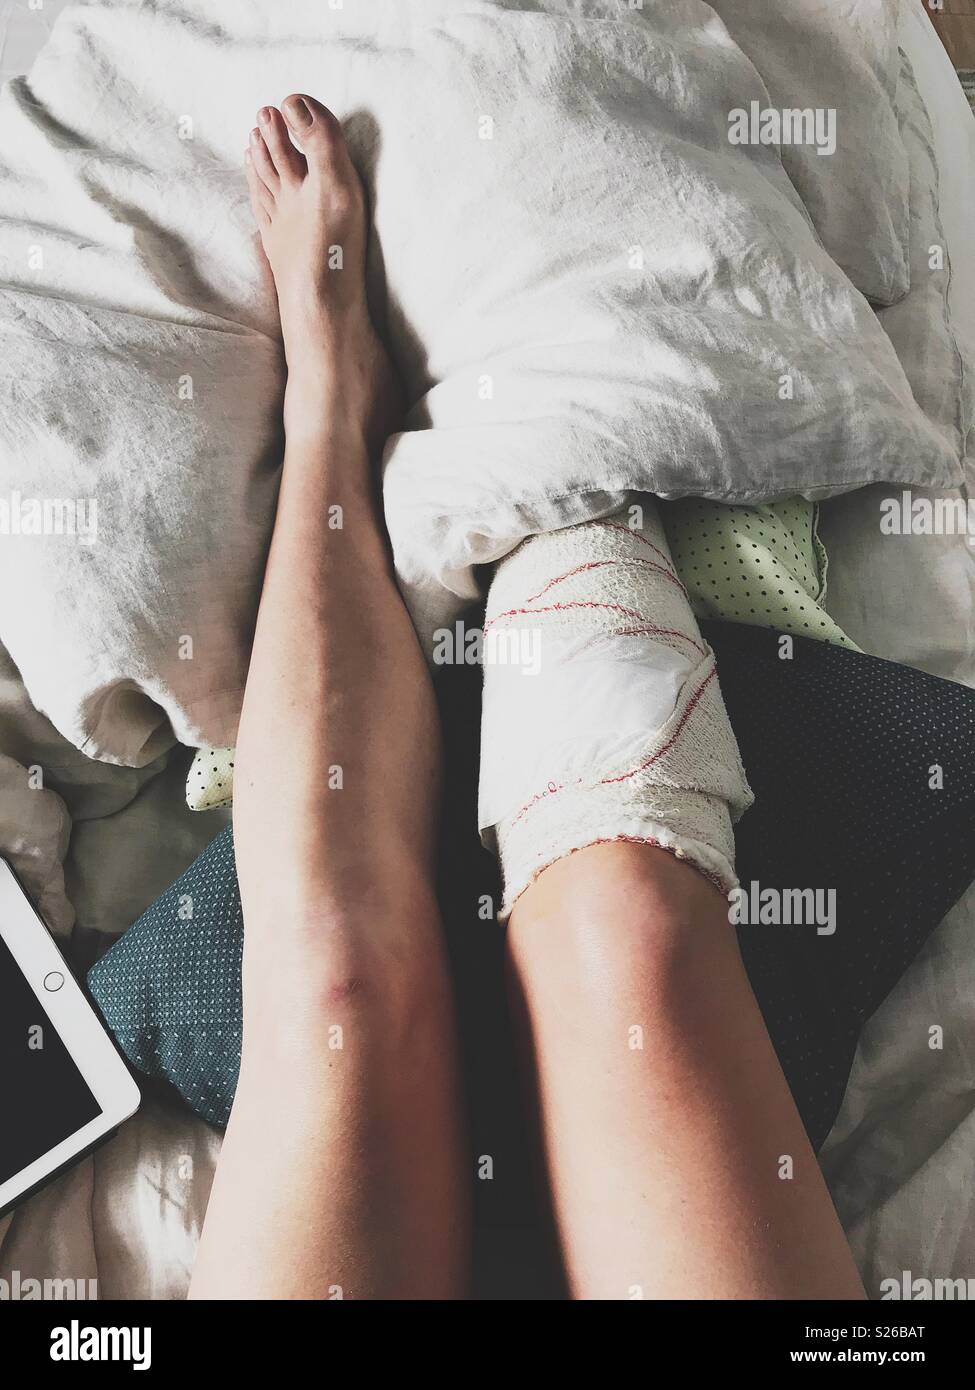 Recuperándose de una fractura en la pierna. Par de piernas desde arriba en una cama con almohadones y un tablet. Foto de stock